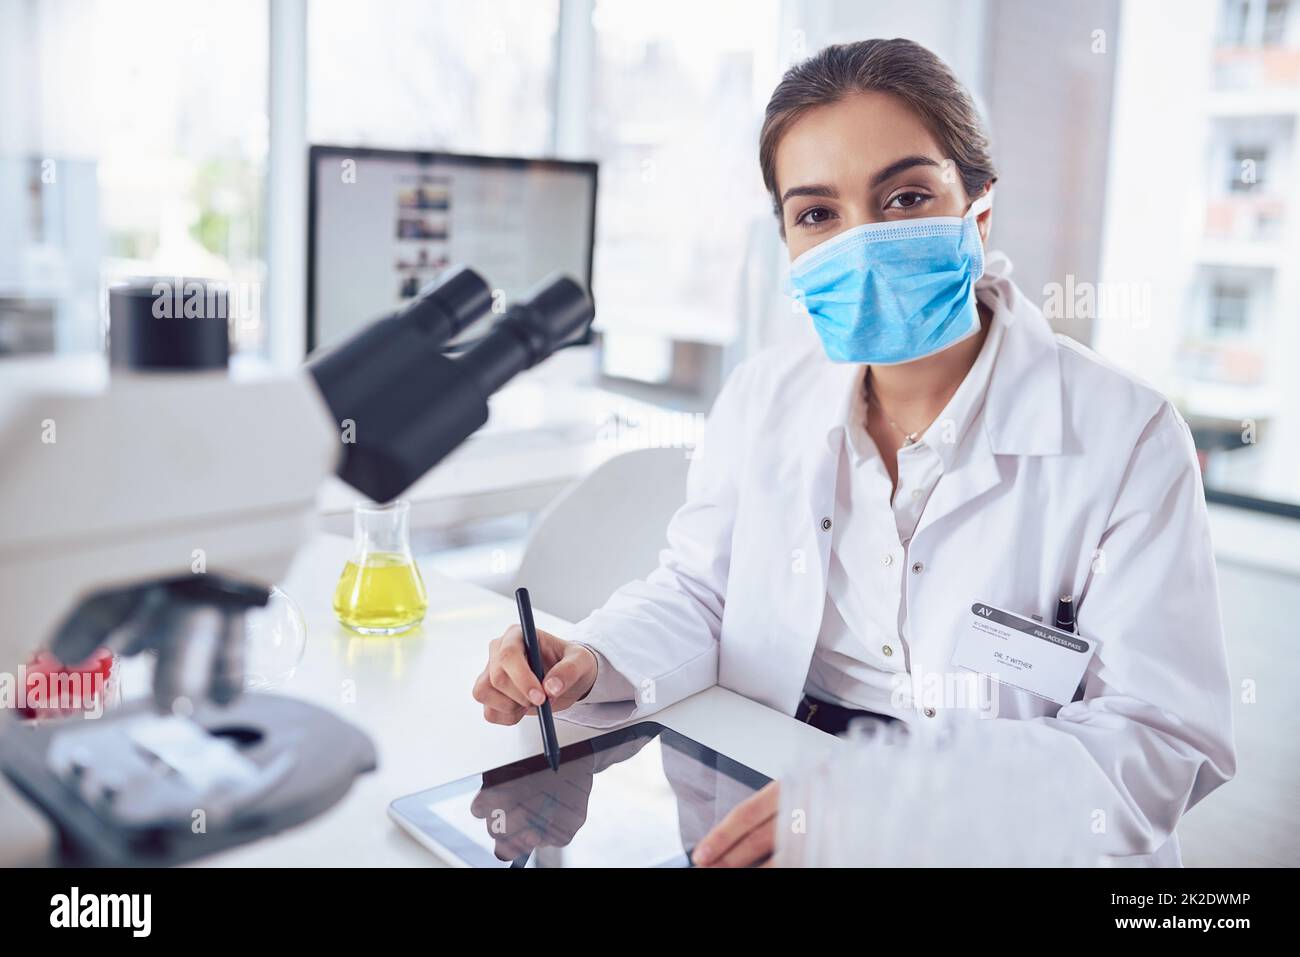 Juste un autre jour dans le laboratoire. Portrait d'une jeune scientifique confiante portant un masque chirurgical et travaillant sur une tablette numérique tout en regardant la caméra dans un laboratoire. Banque D'Images